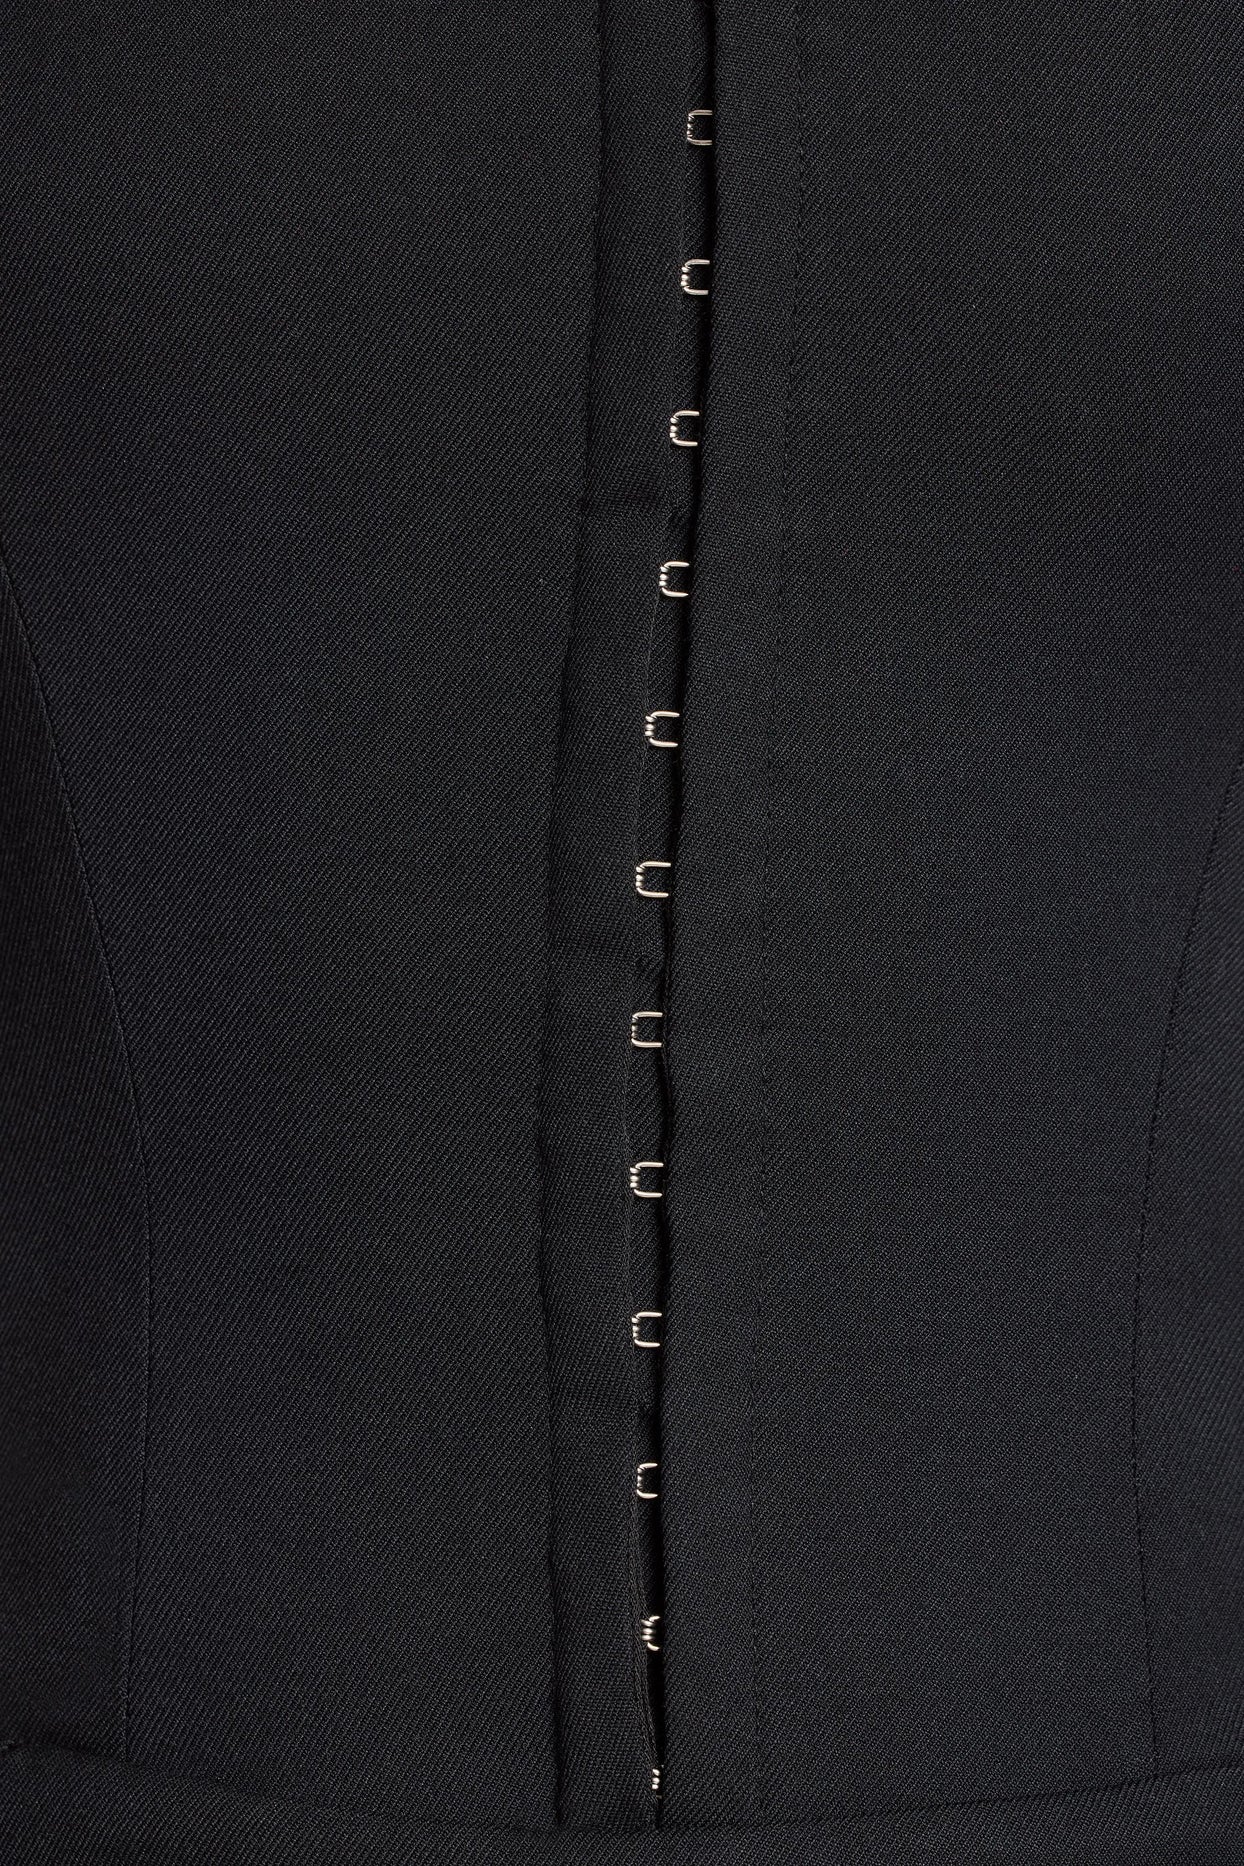 Wysoki gorsetowy kombinezon typu bandeau ze szczotkowanego diagonalu w kolorze czarnym